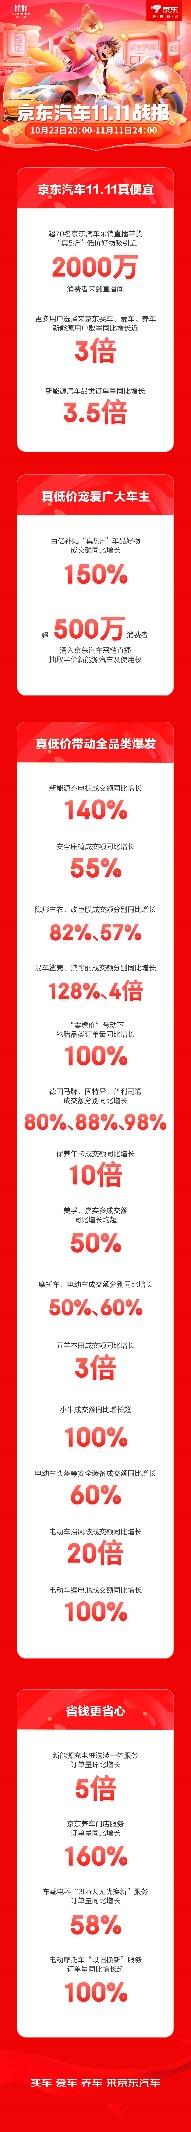 1111-【汽车战报稿】京东汽车11.11全面爆发：新能源用户数量增长近3倍、百亿补贴增长150%